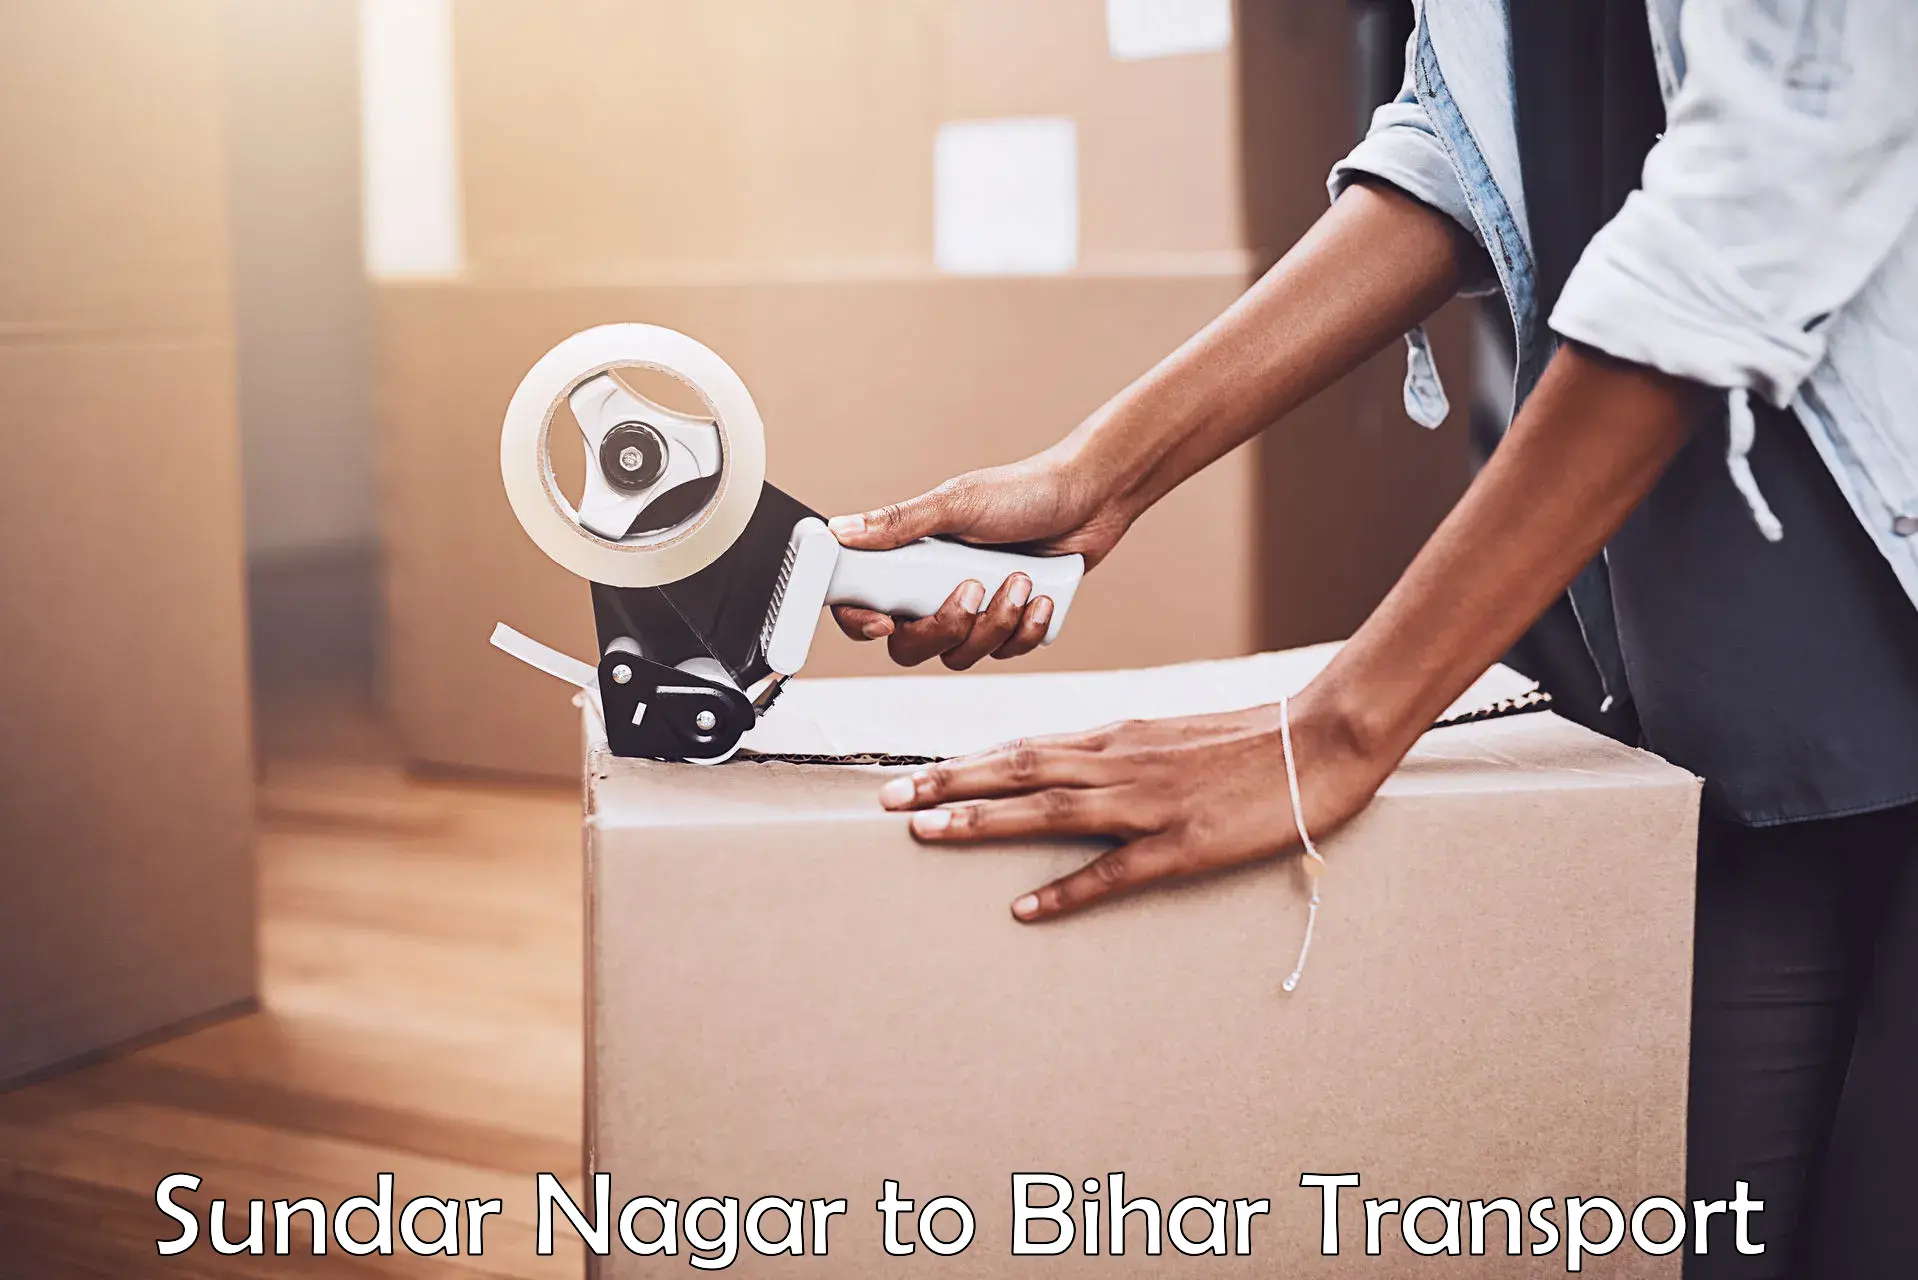 Shipping services Sundar Nagar to Bihar